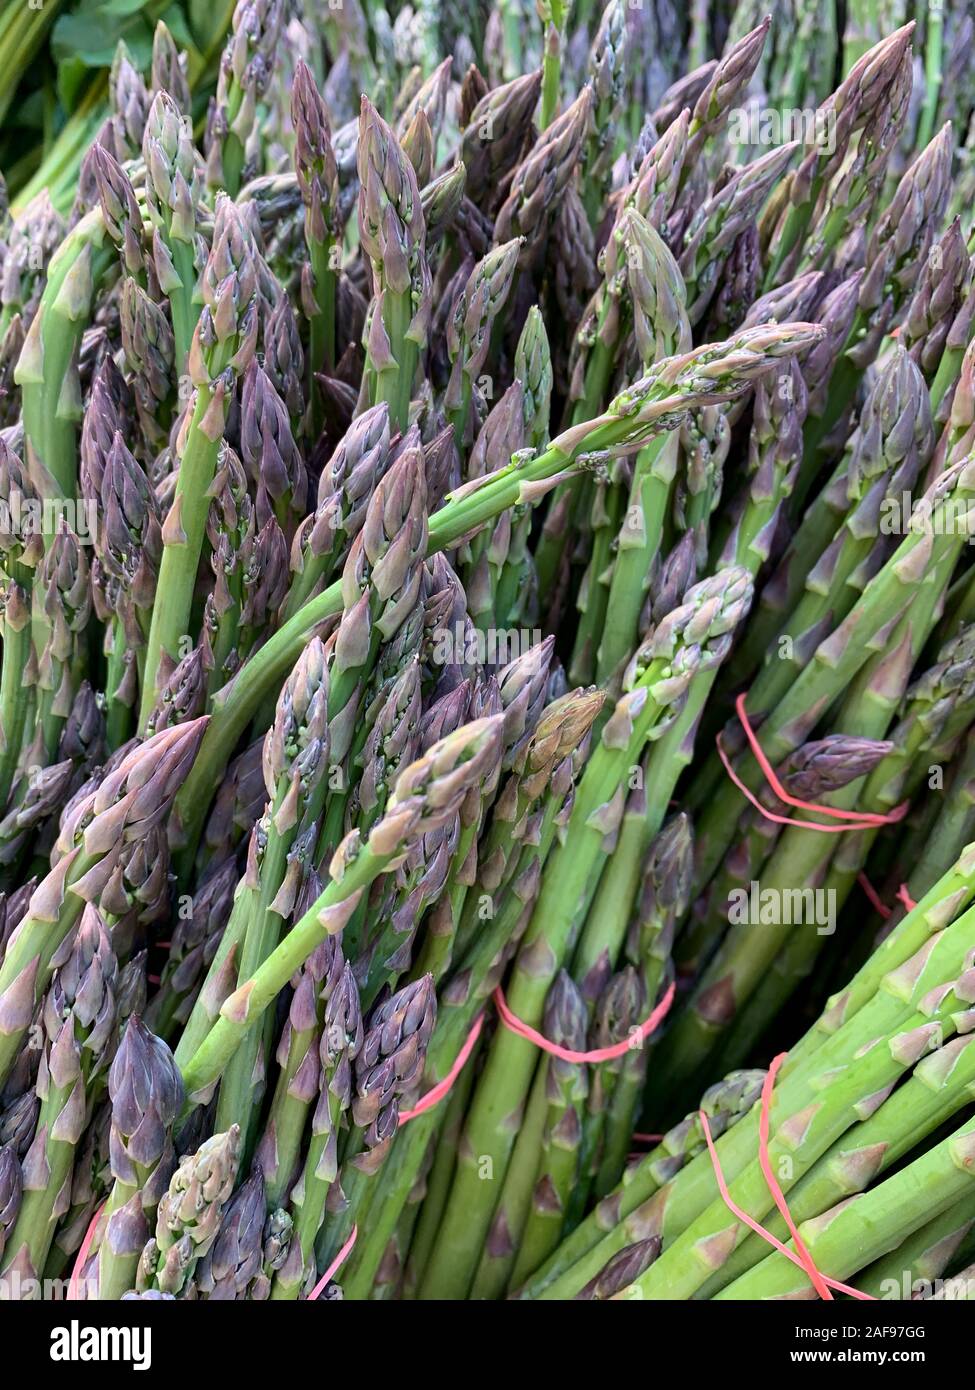 Asparagi freschi, il Mercato degli Agricoltori. Alexandria, Virginia, Stati Uniti d'America. Foto Stock